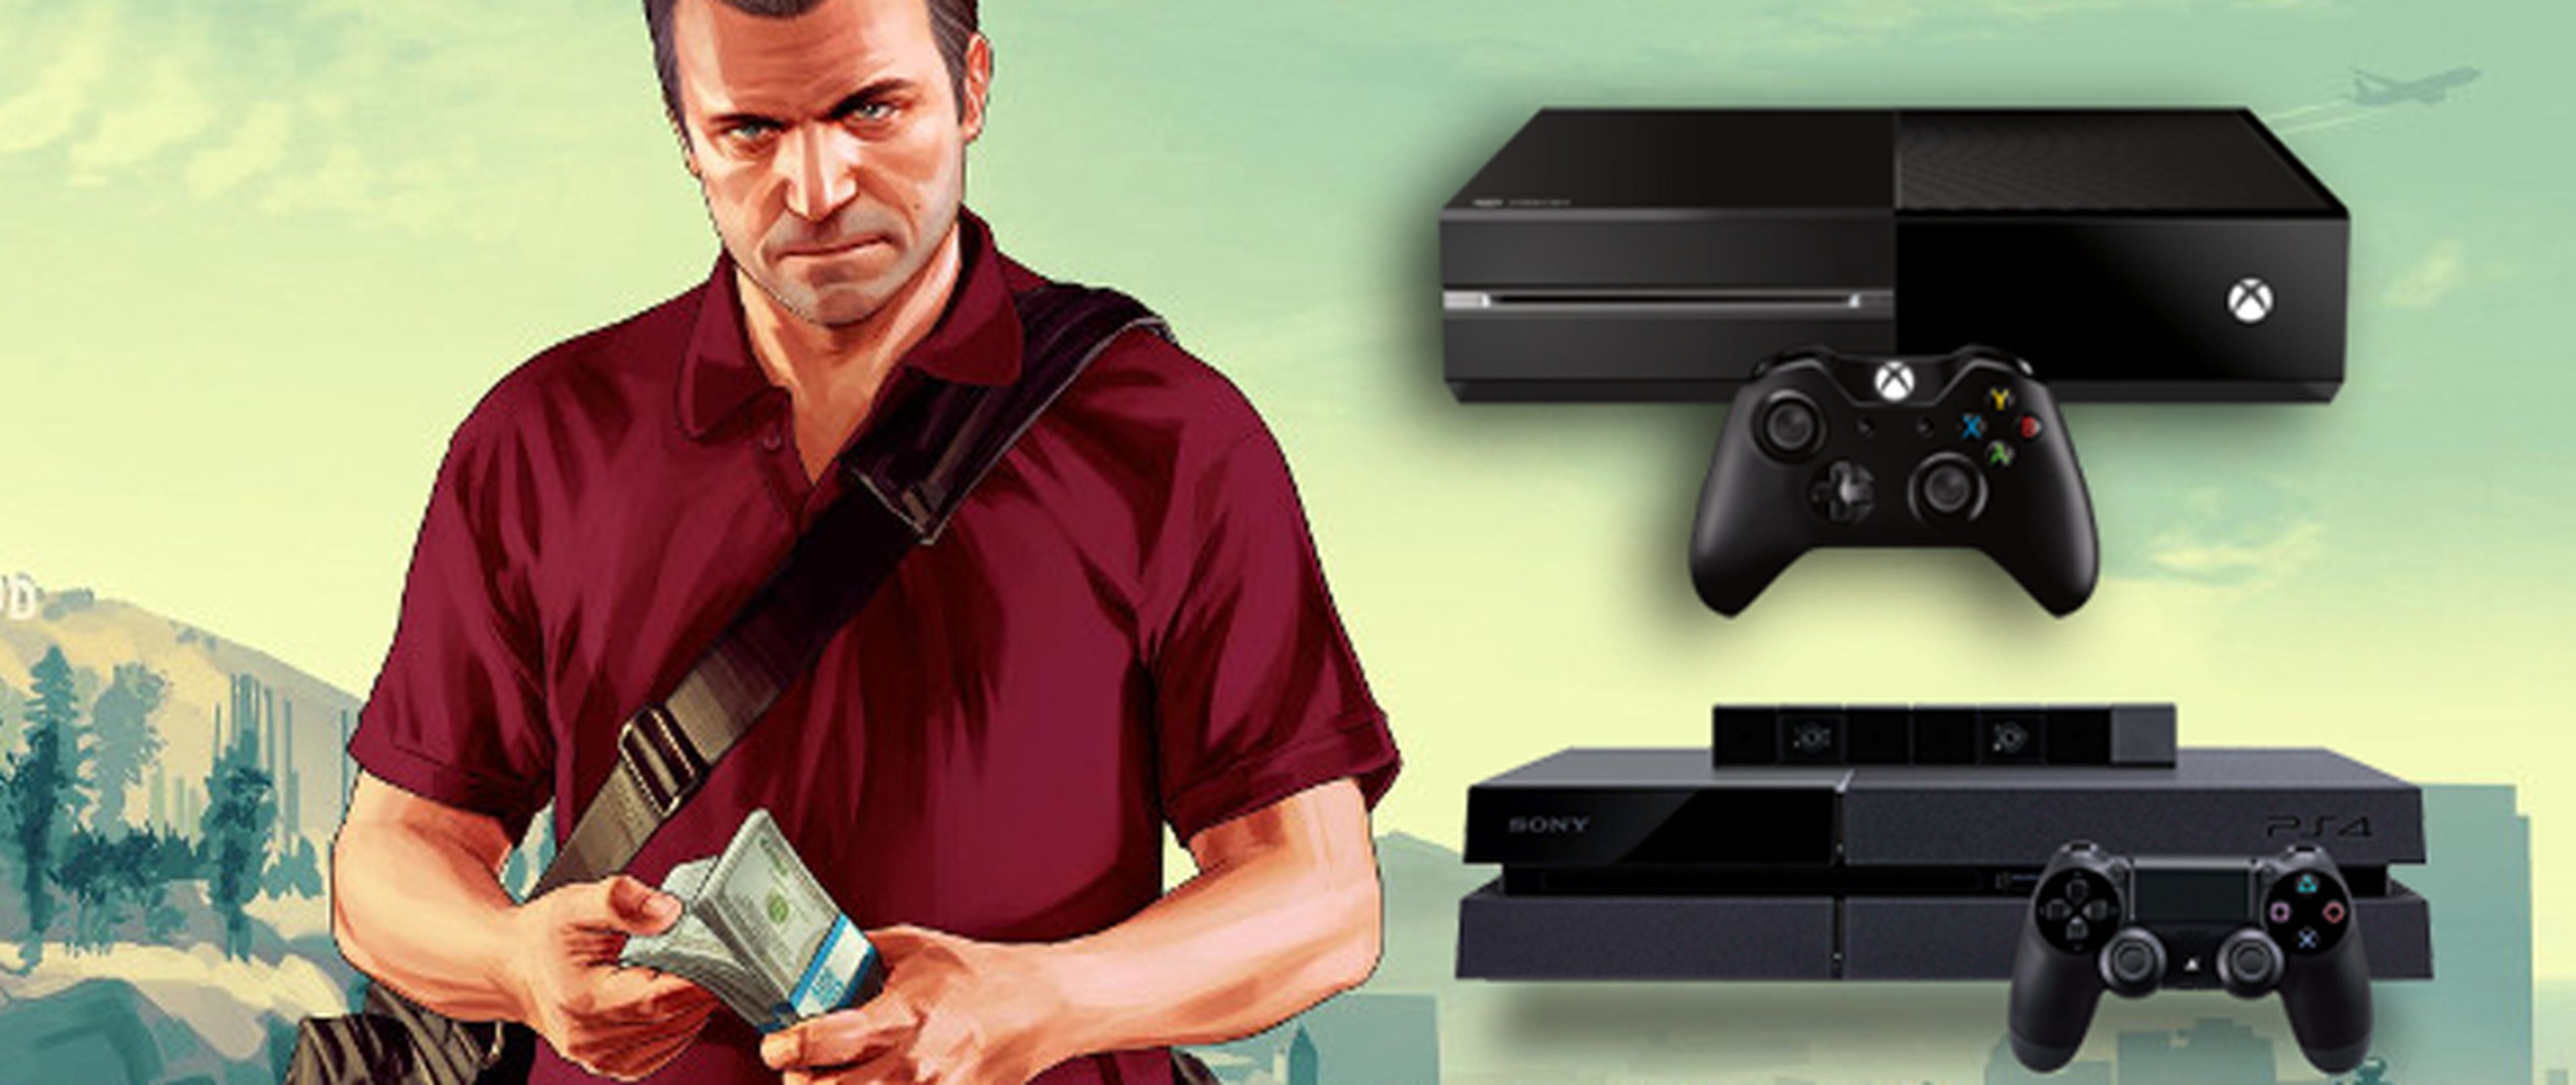 Consolas PS4 de segunda mano y nuevas al mejor precio!